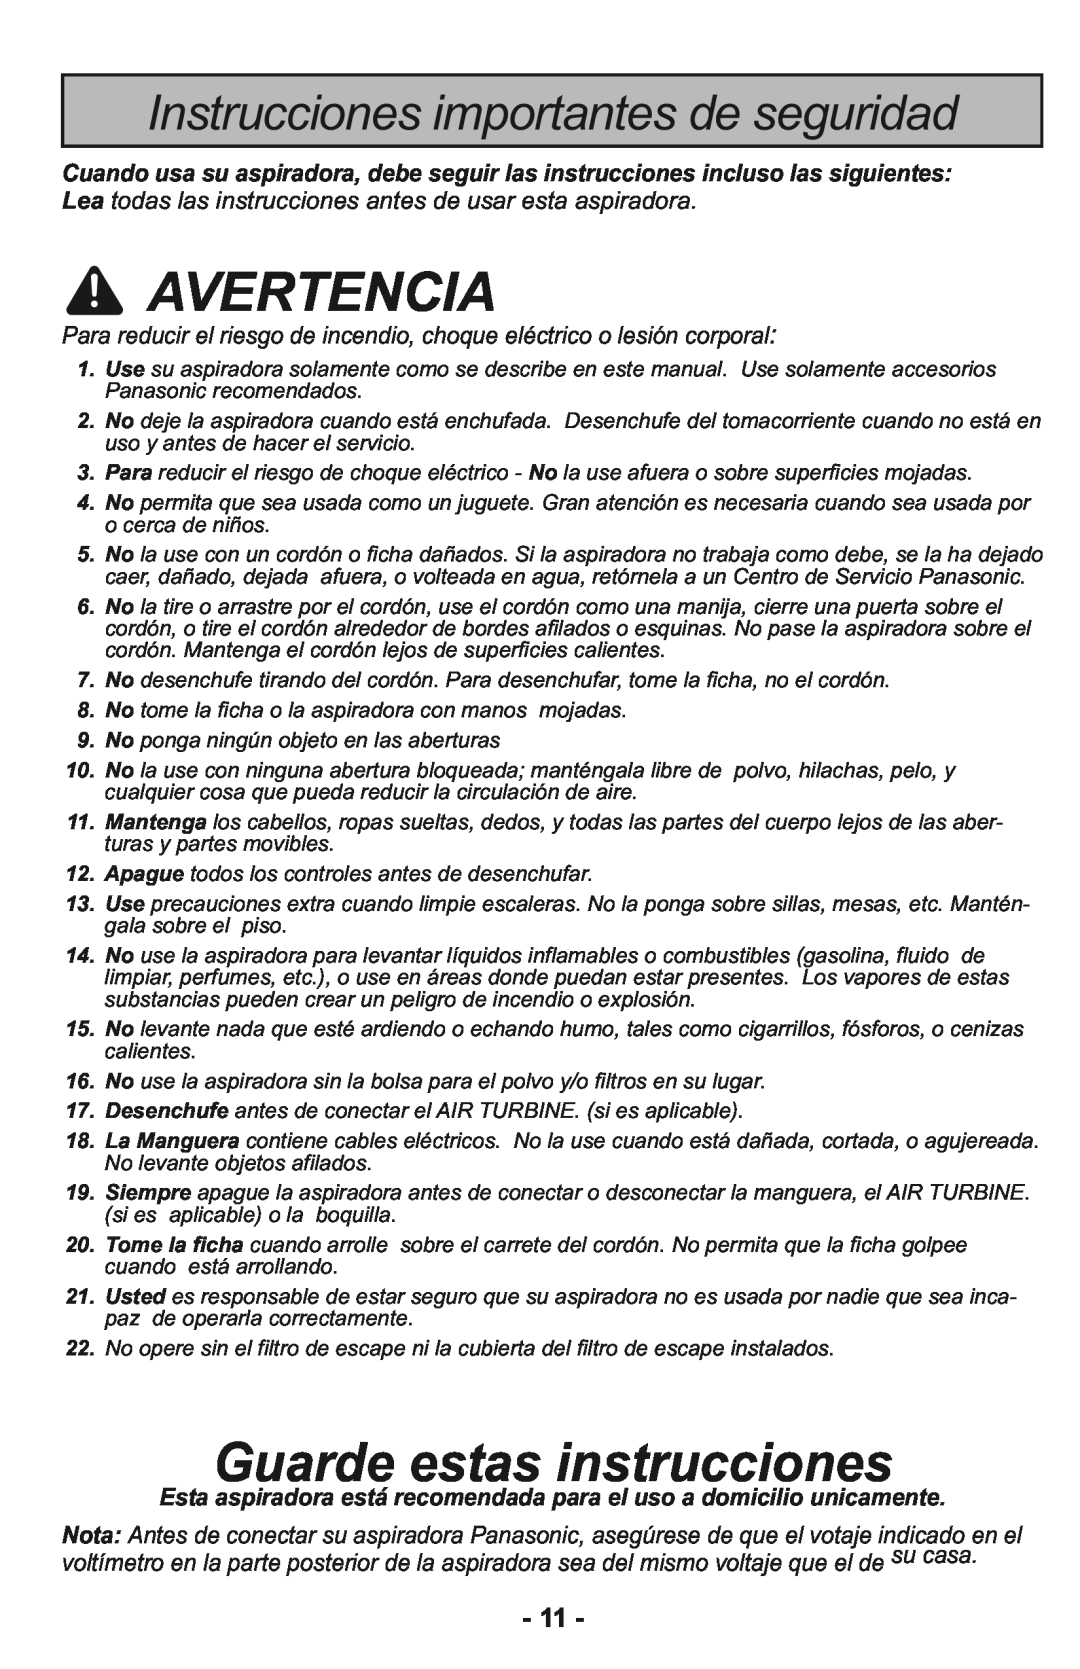 Panasonic MC-CG937 manuel dutilisation Avertencia, Guarde estas instrucciones, Instrucciones importantes de seguridad 